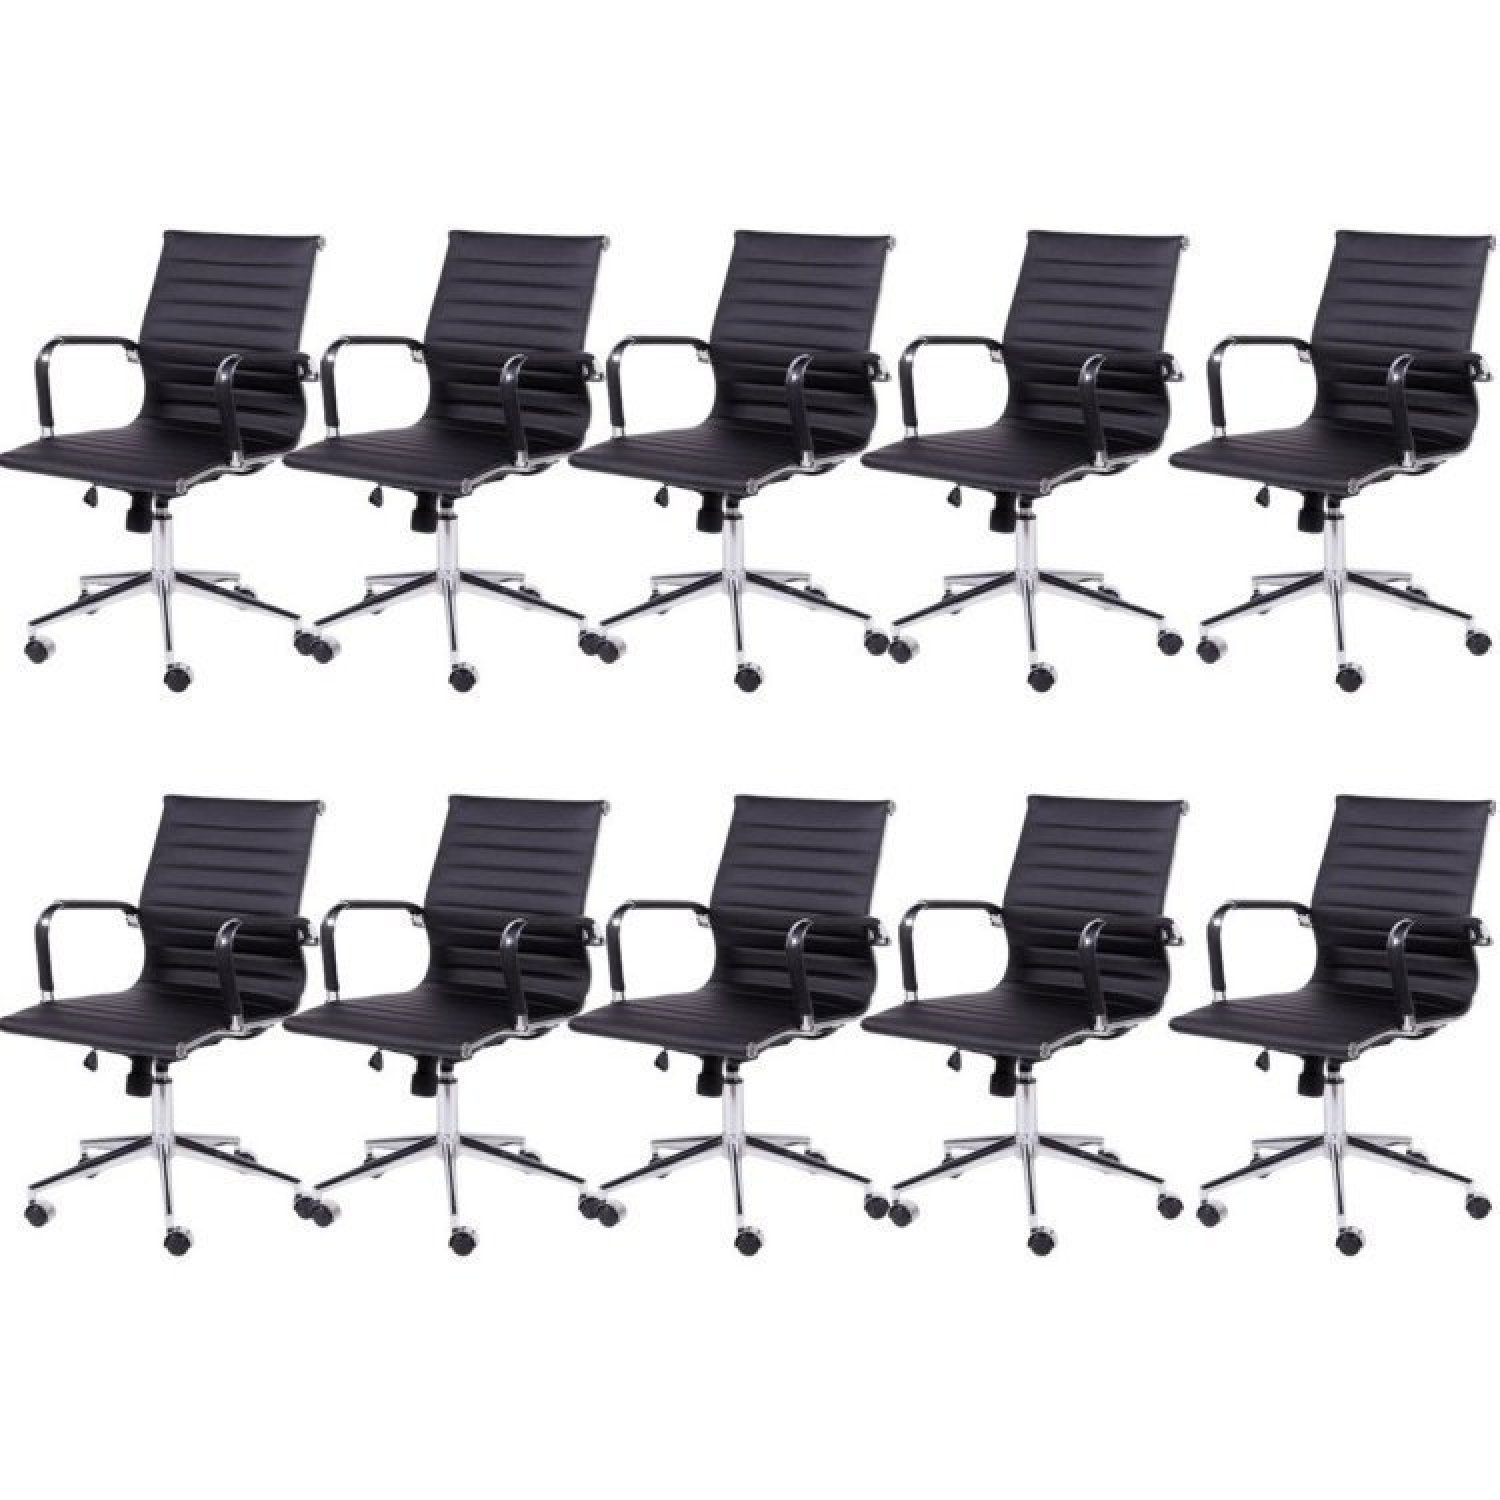 Kit 10 Cadeiras para Escritório Diretor Esteirinha com Relax Corino 3301  - 1